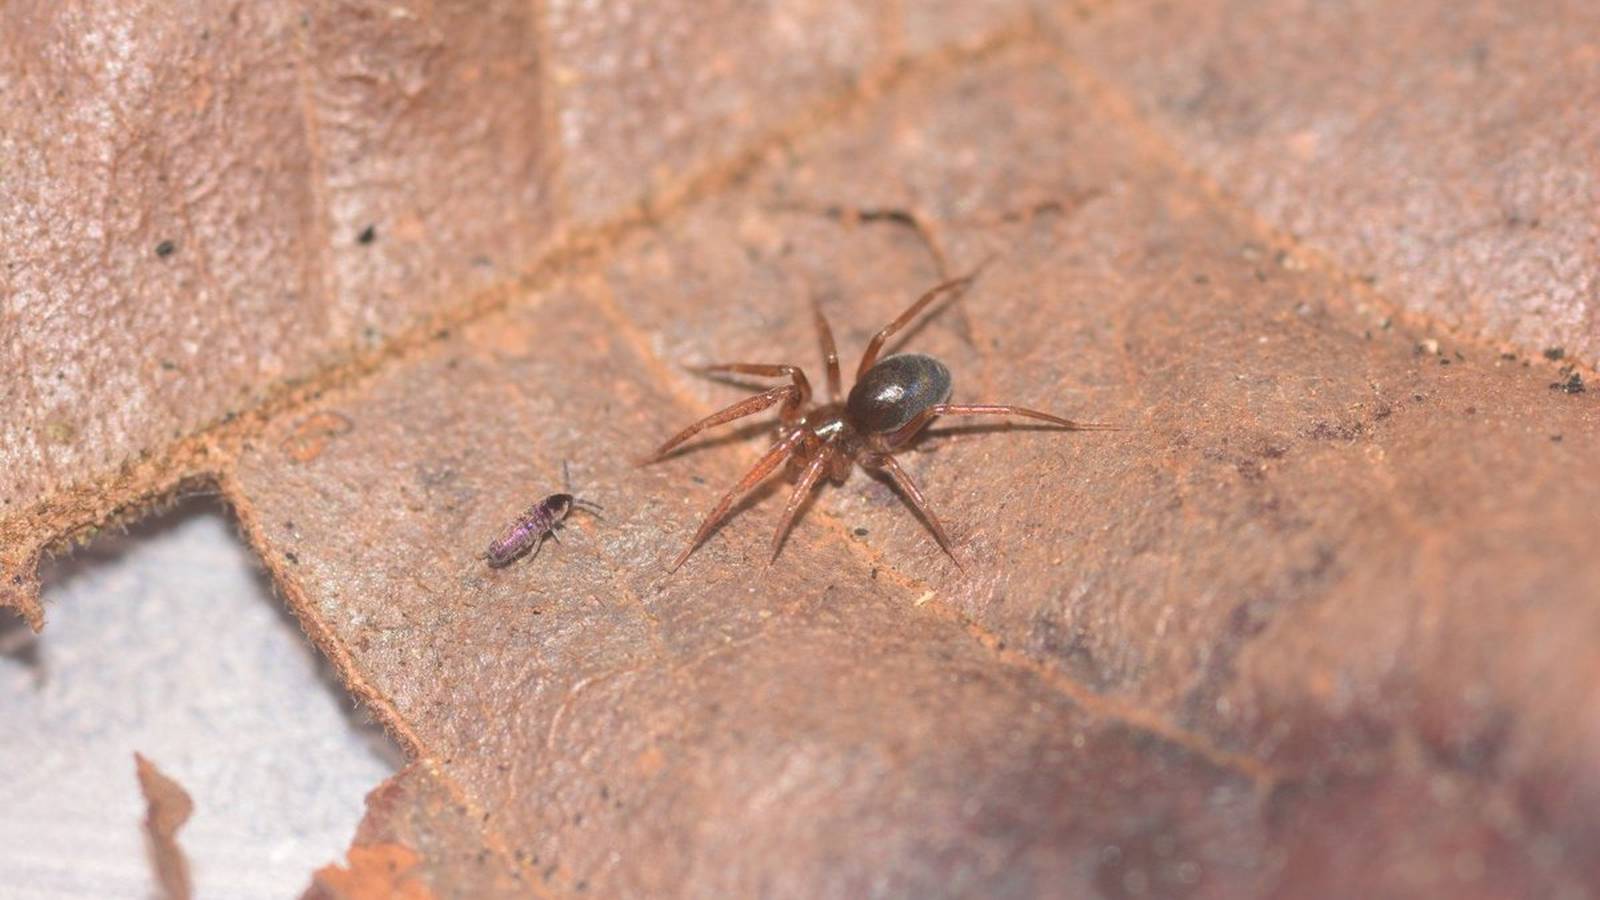 Descubren Dos Nuevas Especies De Arañas En Chiapas El Financiero